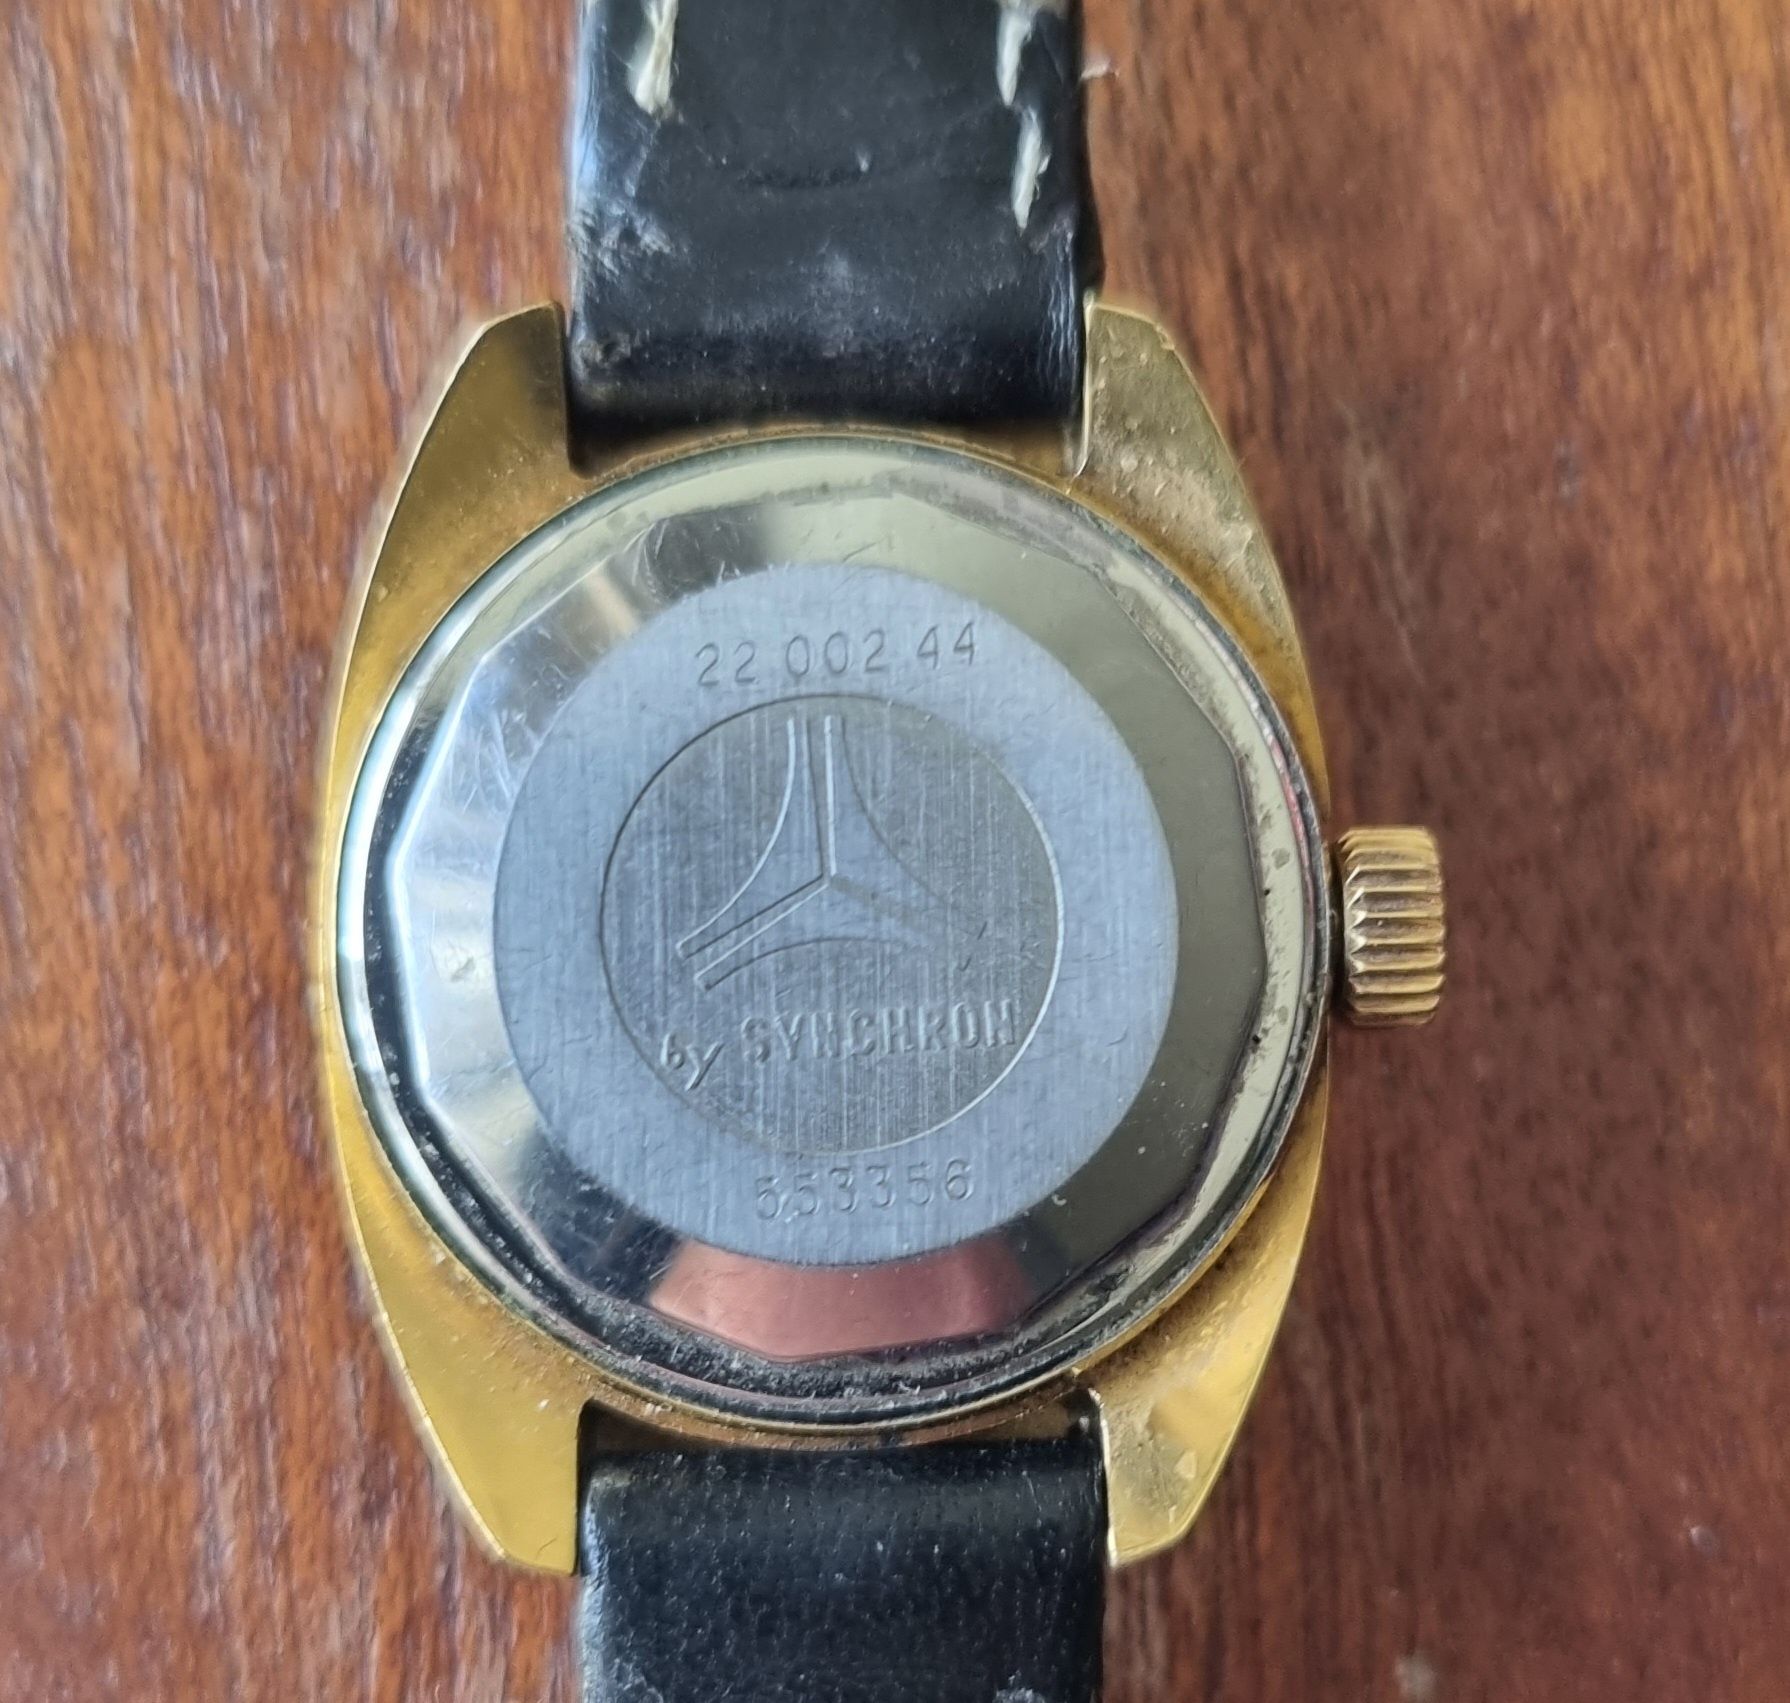 Relógio Cyma Anos 70 banhado a ouro